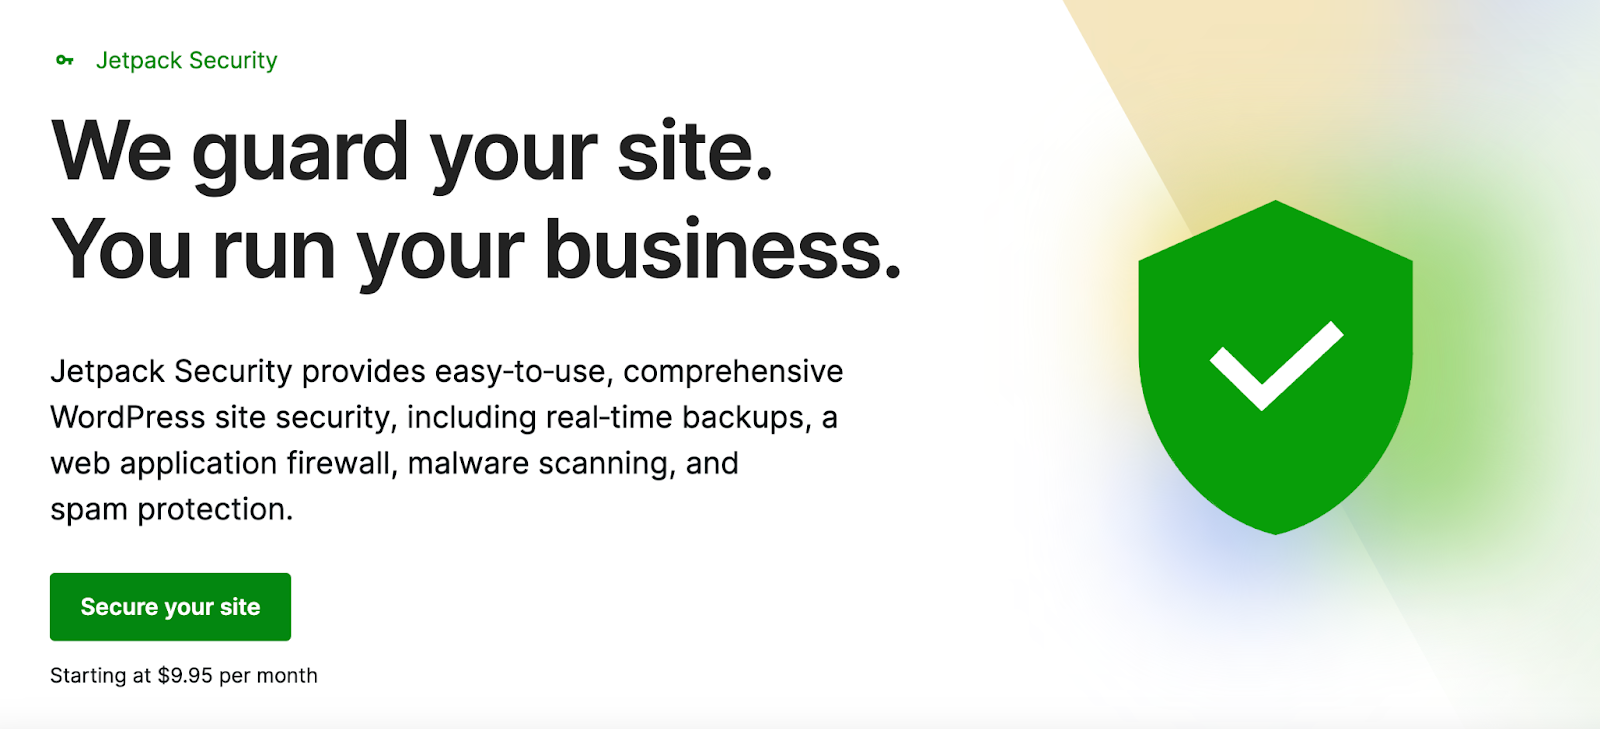 A JetPack Security oferece proteção abrangente para o seu site WordPress, abrangendo backups em tempo real, varredura de malware, proteção de spam e muito mais.